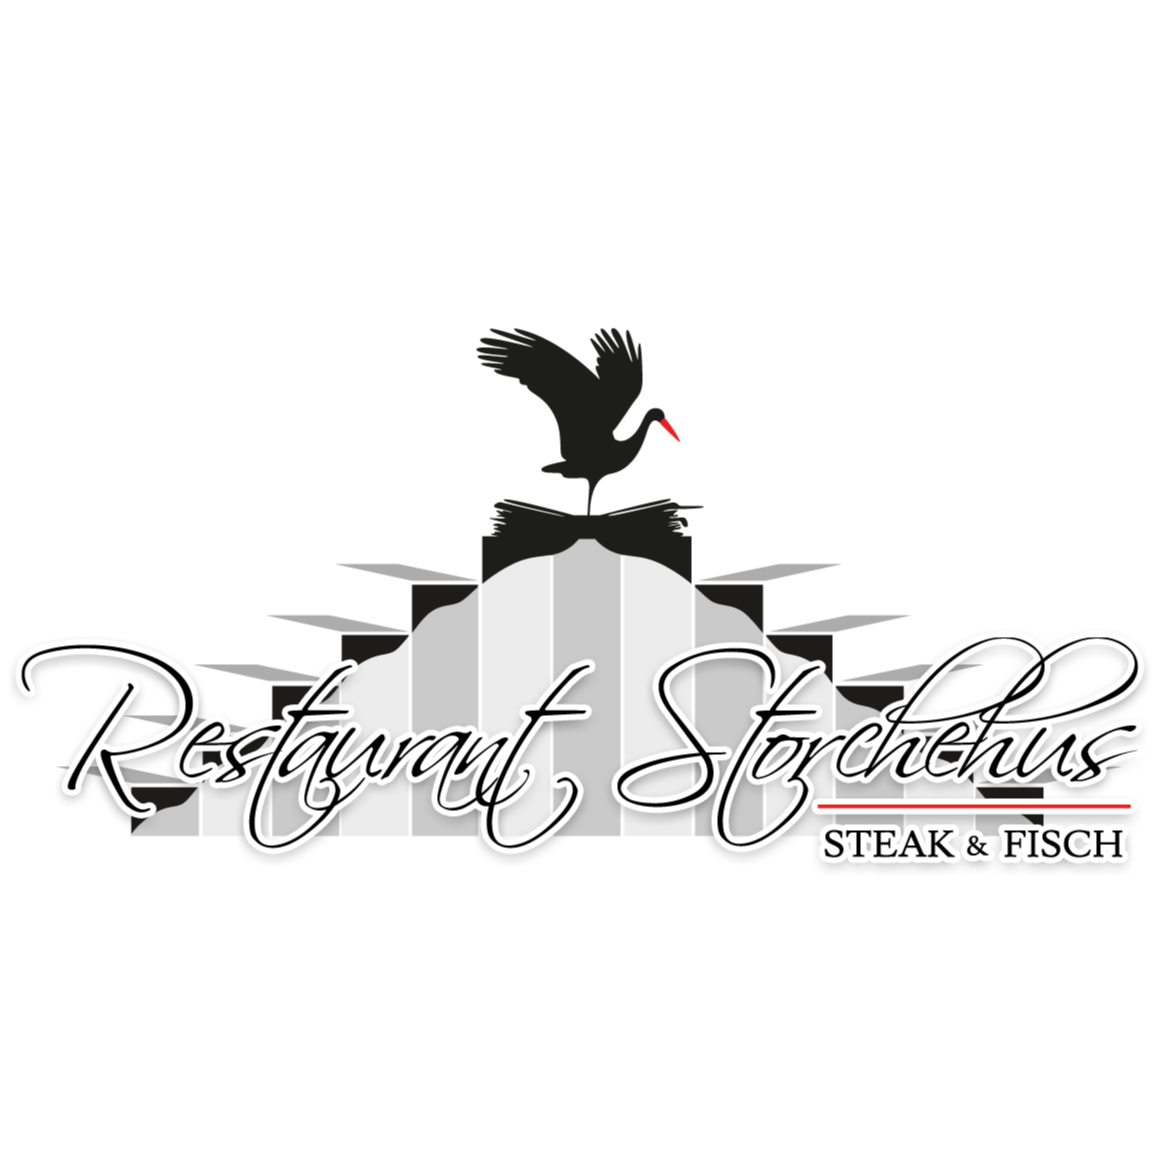 Profilbild von Restaurant Storchehus